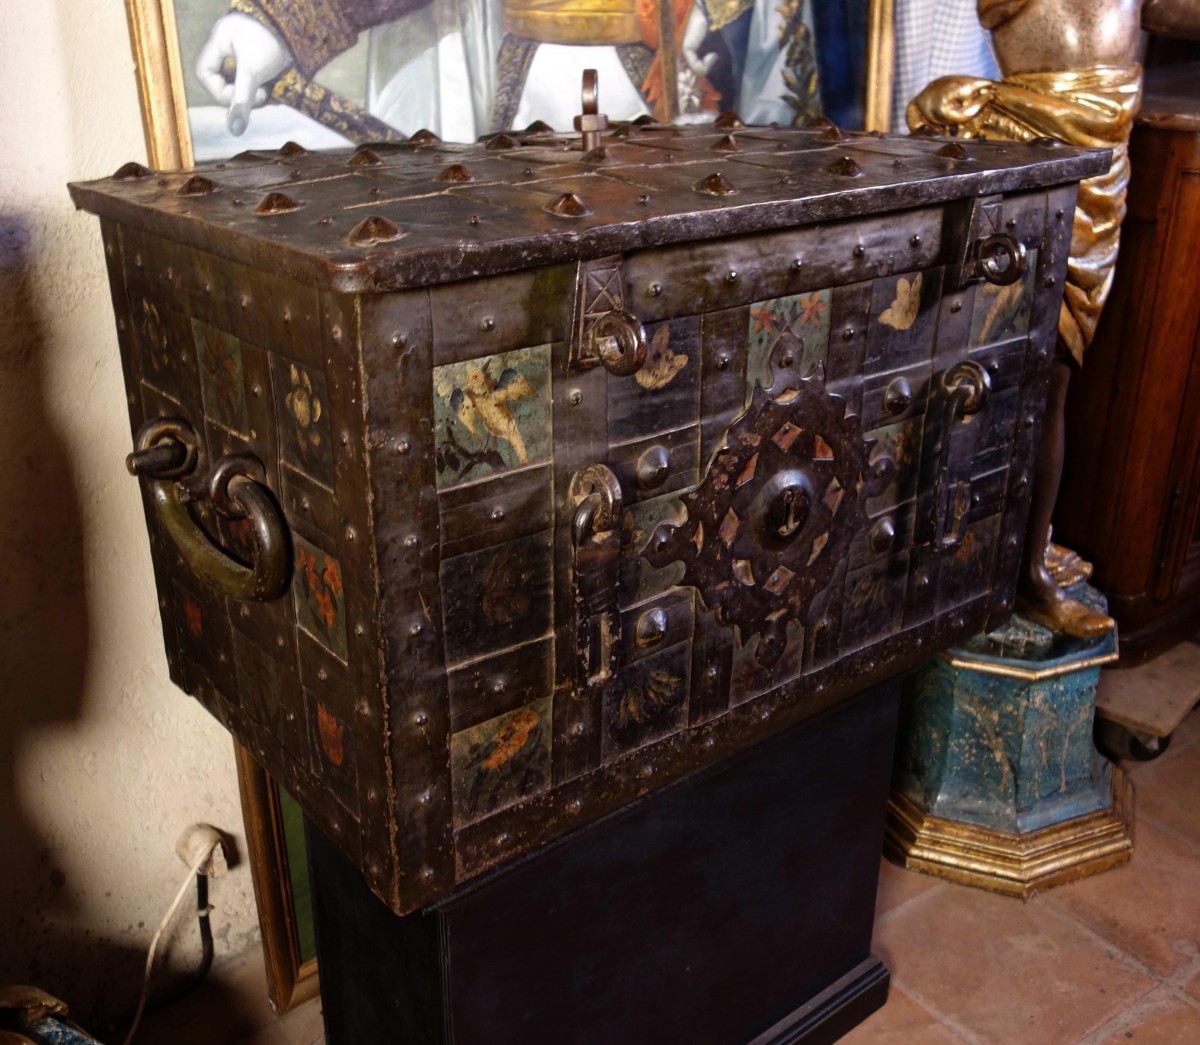 Grand coffre de Nuremberg polychromé avec cadenas - XVIIe siècle